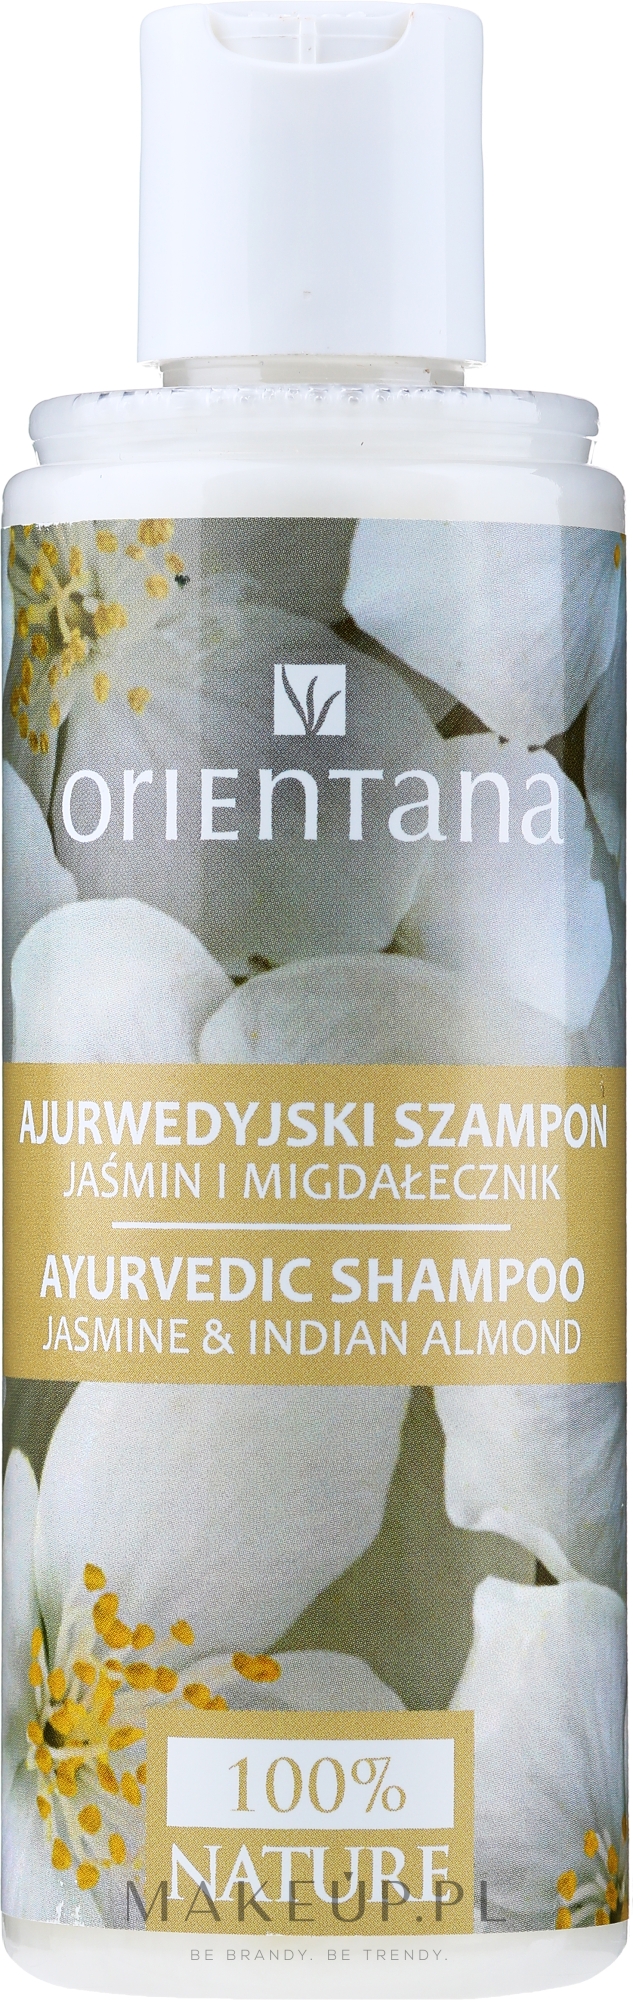 ajurwedyjski szampon do włosów jaśmin i migdałecznik wizaz